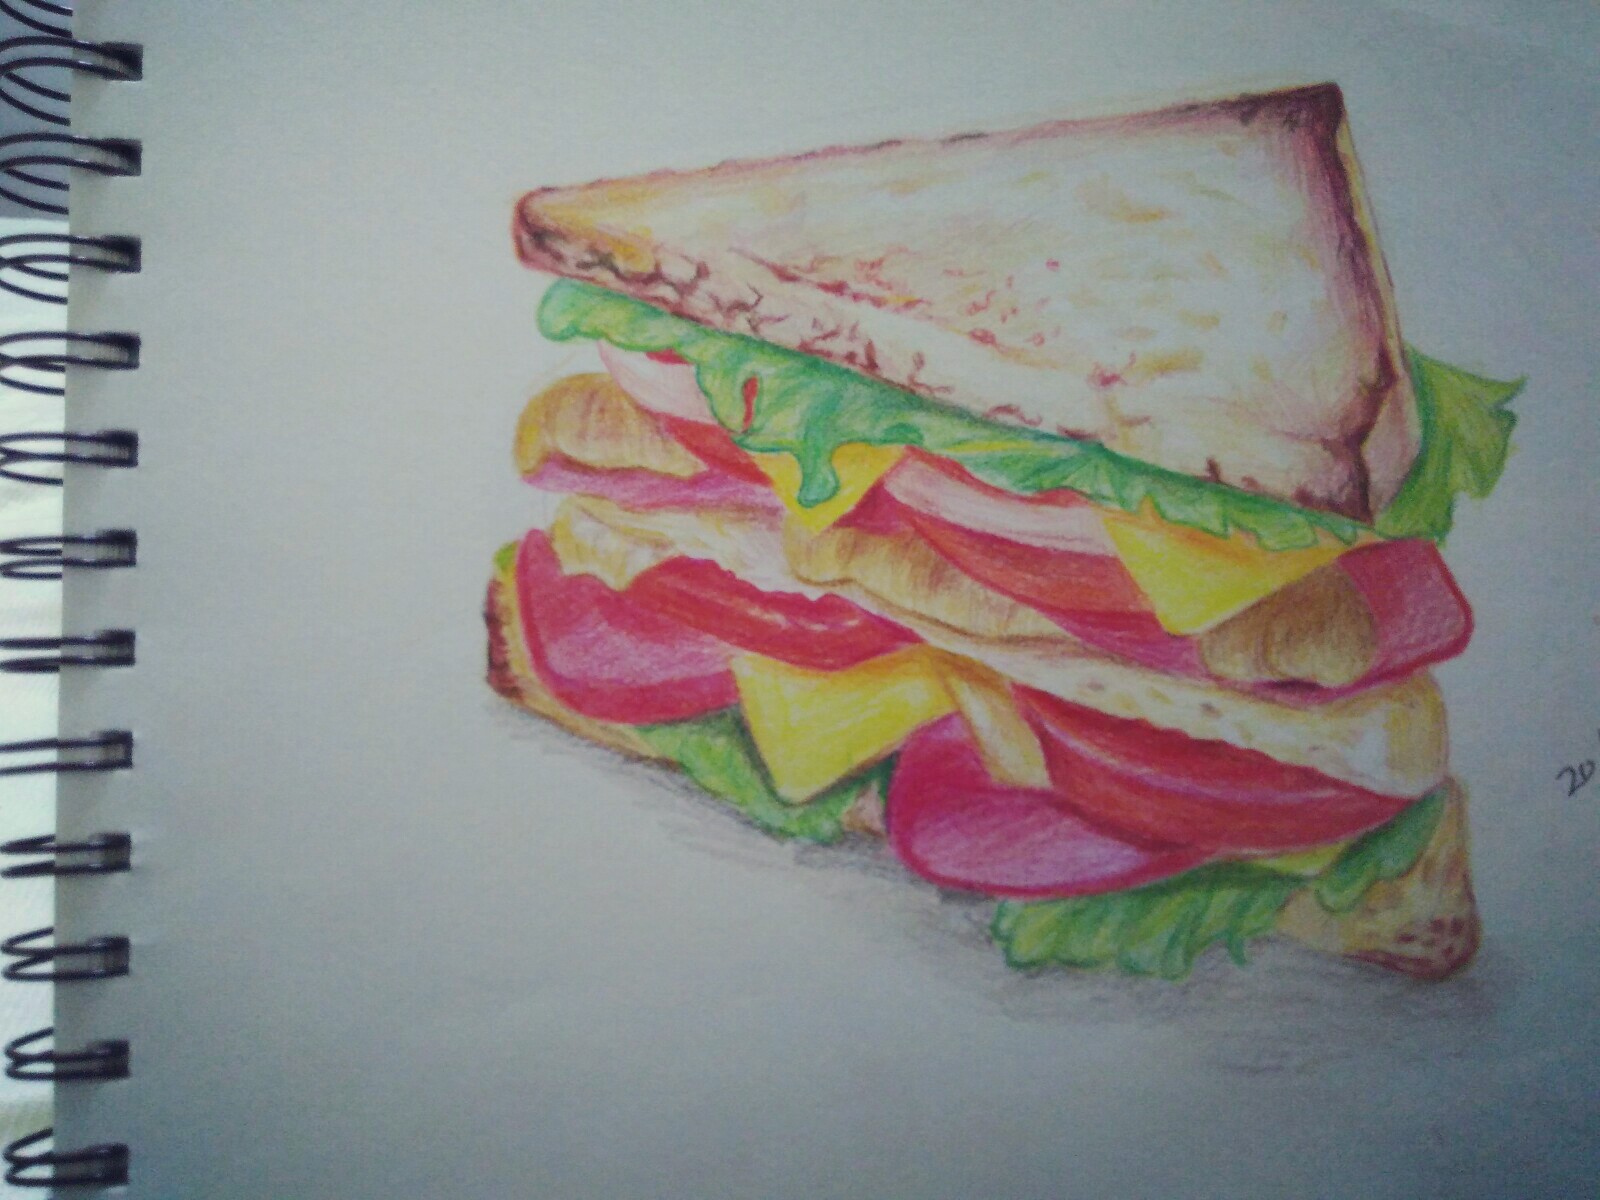 彩铅三明治 手绘 铅笔 彩铅 彩色 可爱 插画 艺术 美食 甜点 面包